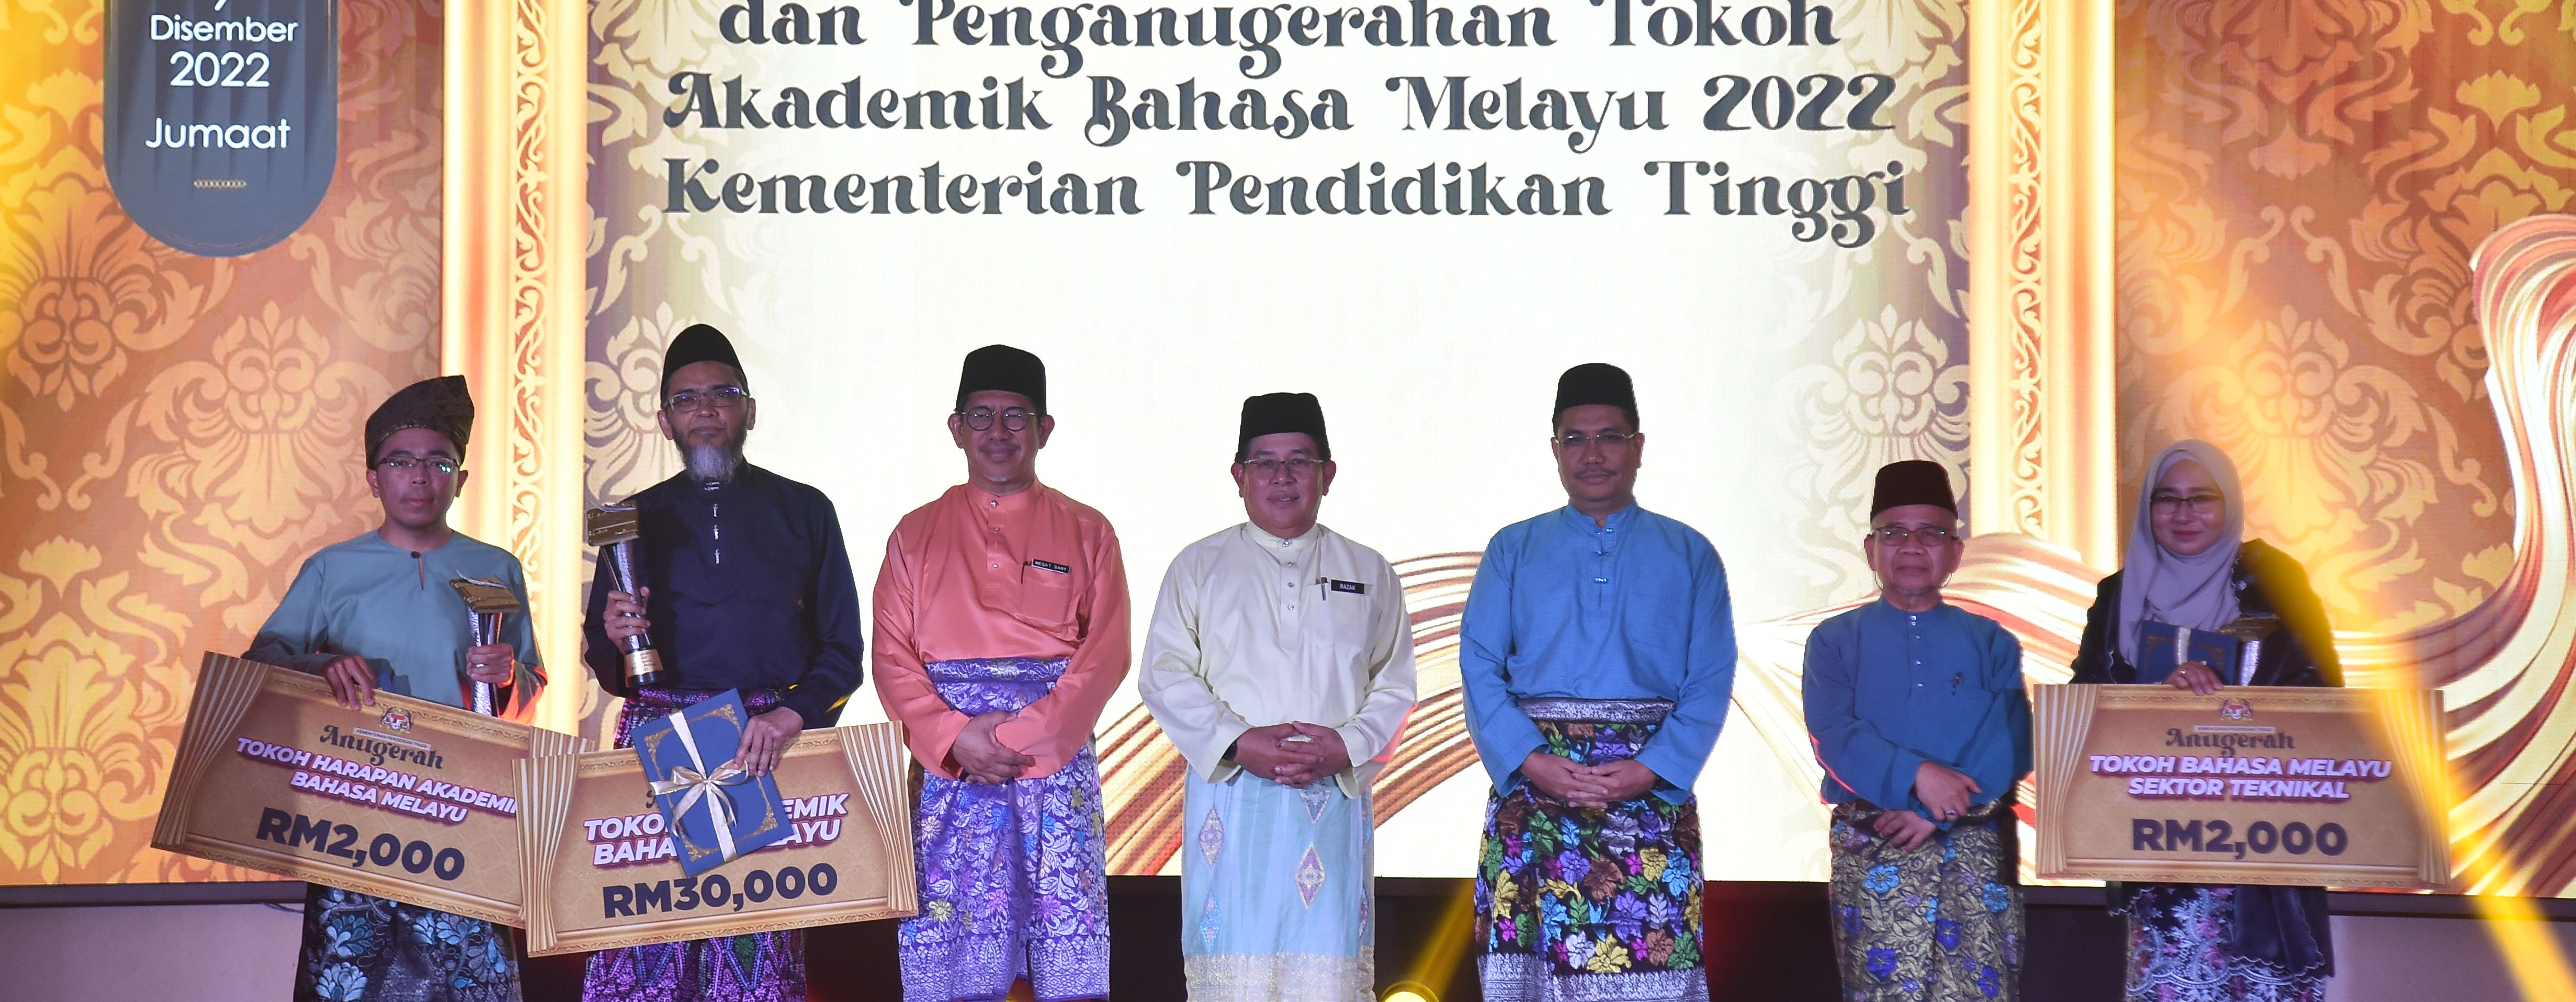 Iltizam KPT Lestarikan Budaya Keilmuan Dengan Bahasa Melayu